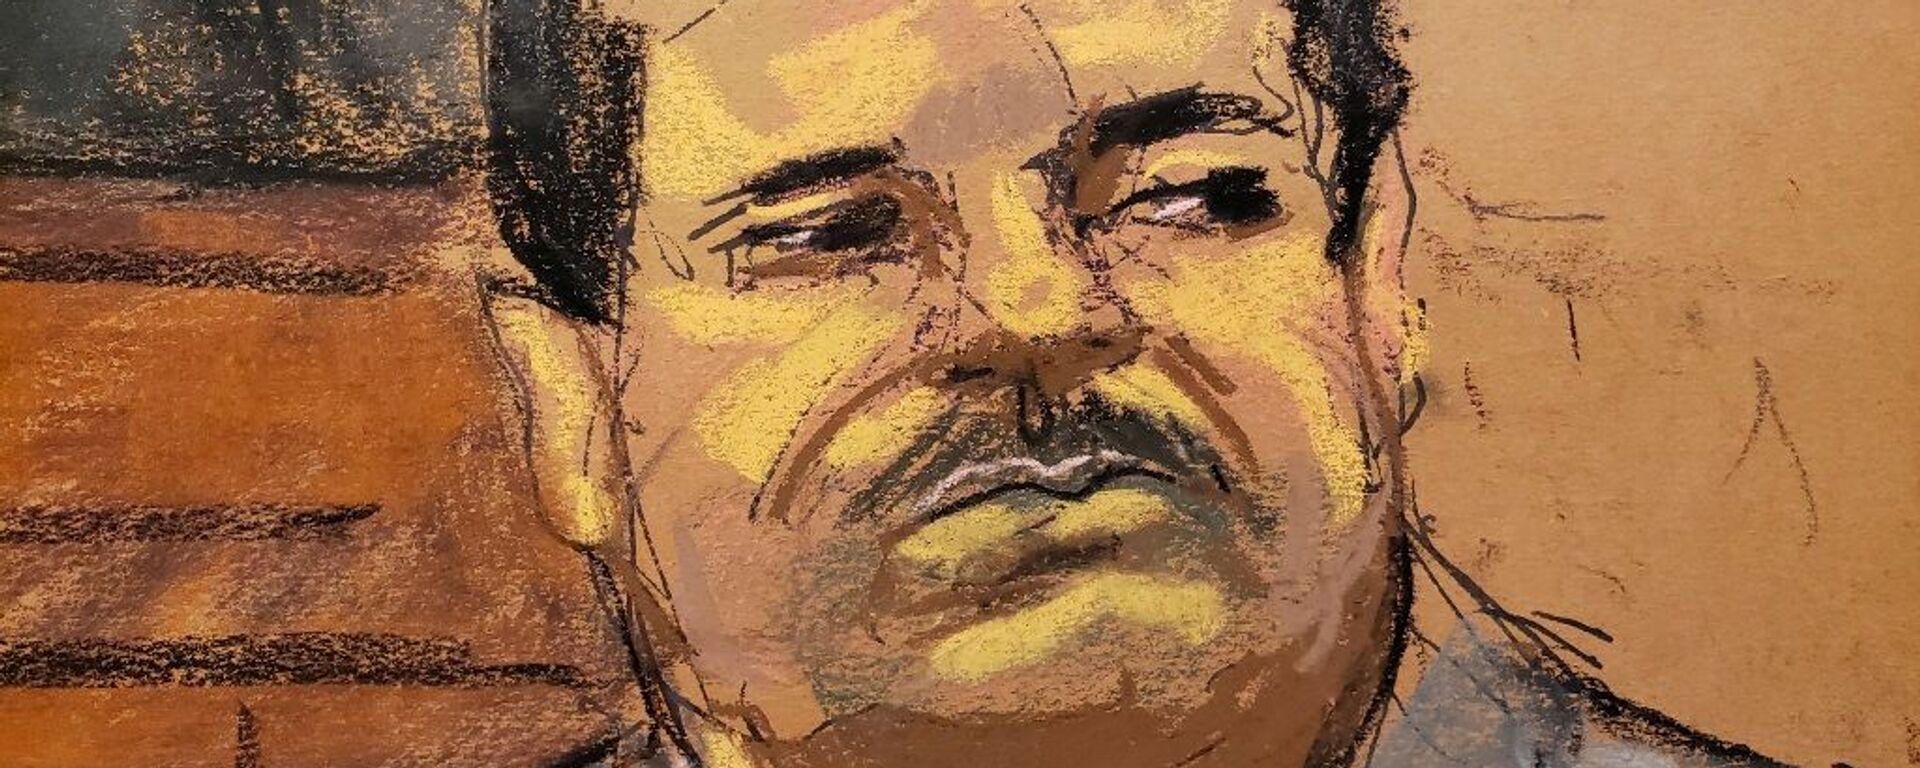 Dünyanın en büyük uyuşturucu örgütünün elebaşı olmakla suçlanan El Chapo (cüce) lakaplı Joaquin Guzman - Sputnik Türkiye, 1920, 25.01.2022